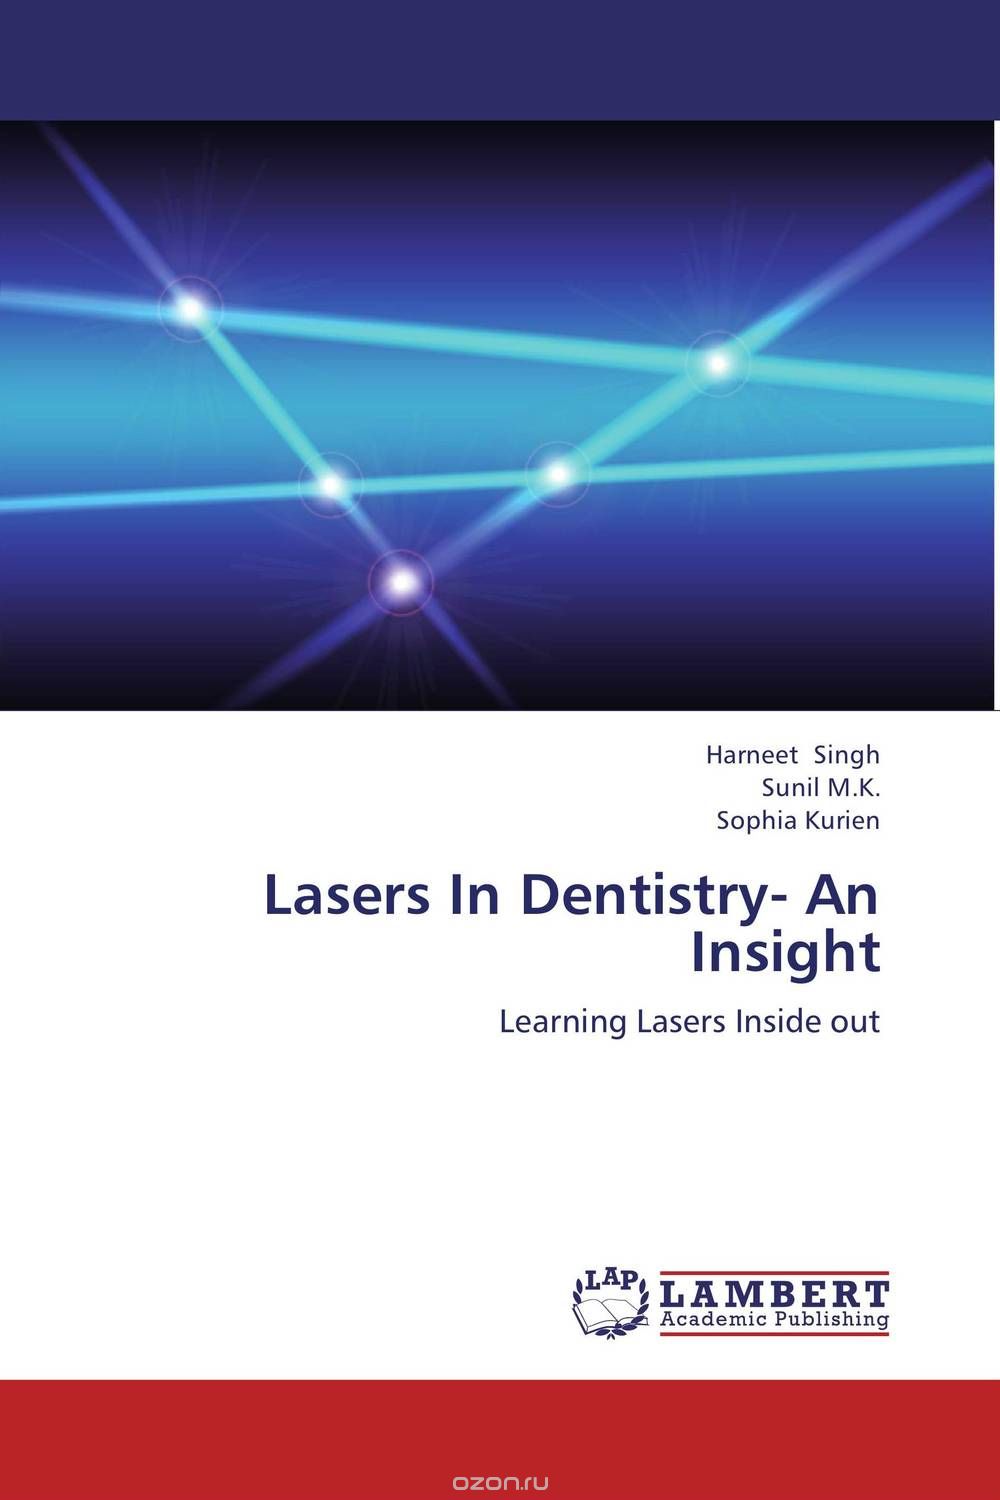 Скачать книгу "Lasers In Dentistry- An Insight"